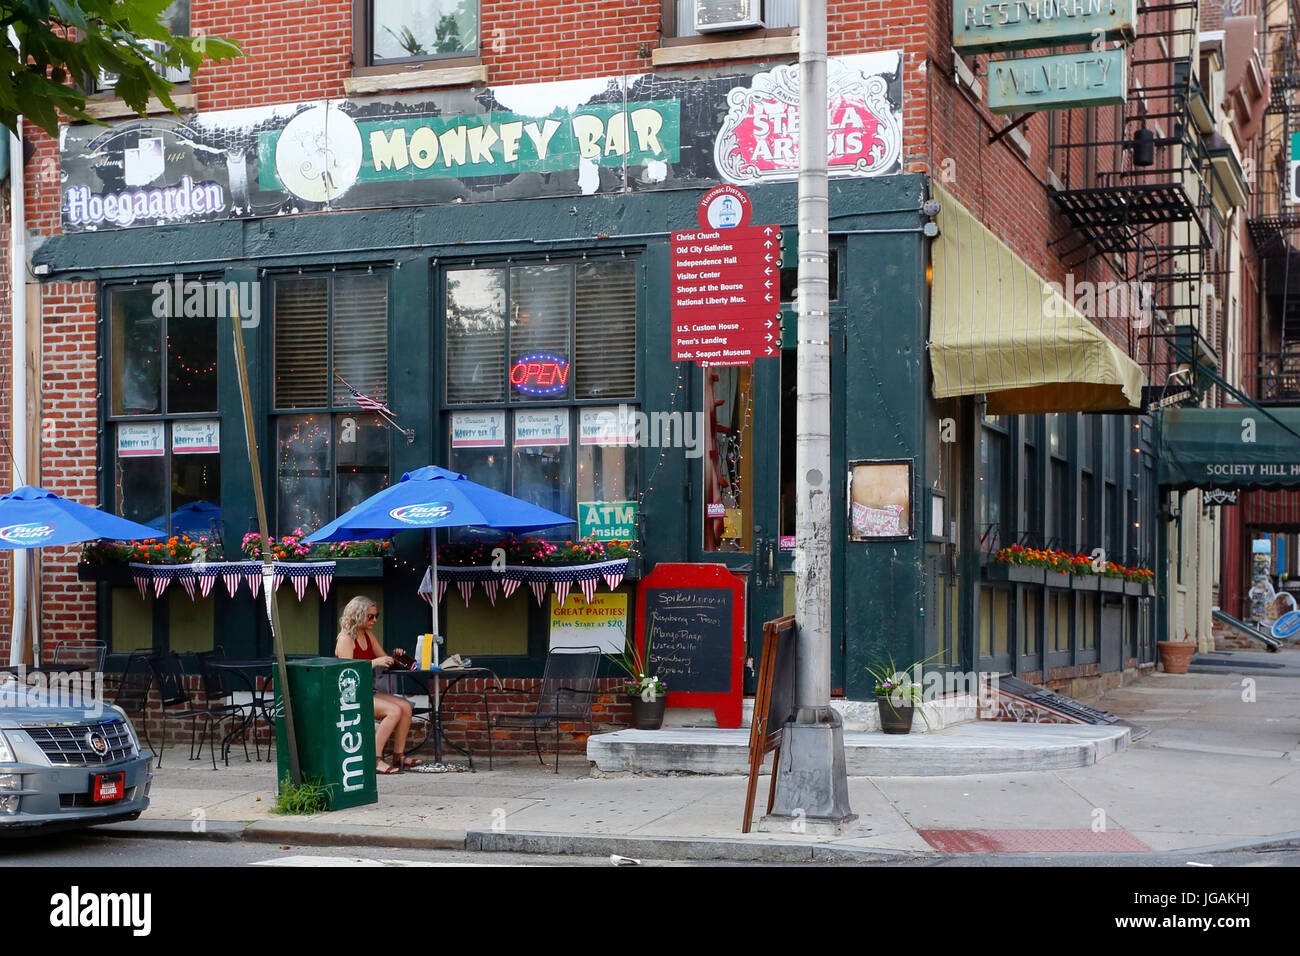 Monkey Bar, 301 Chestnut St, Philadelphia, PA. Stock Photo